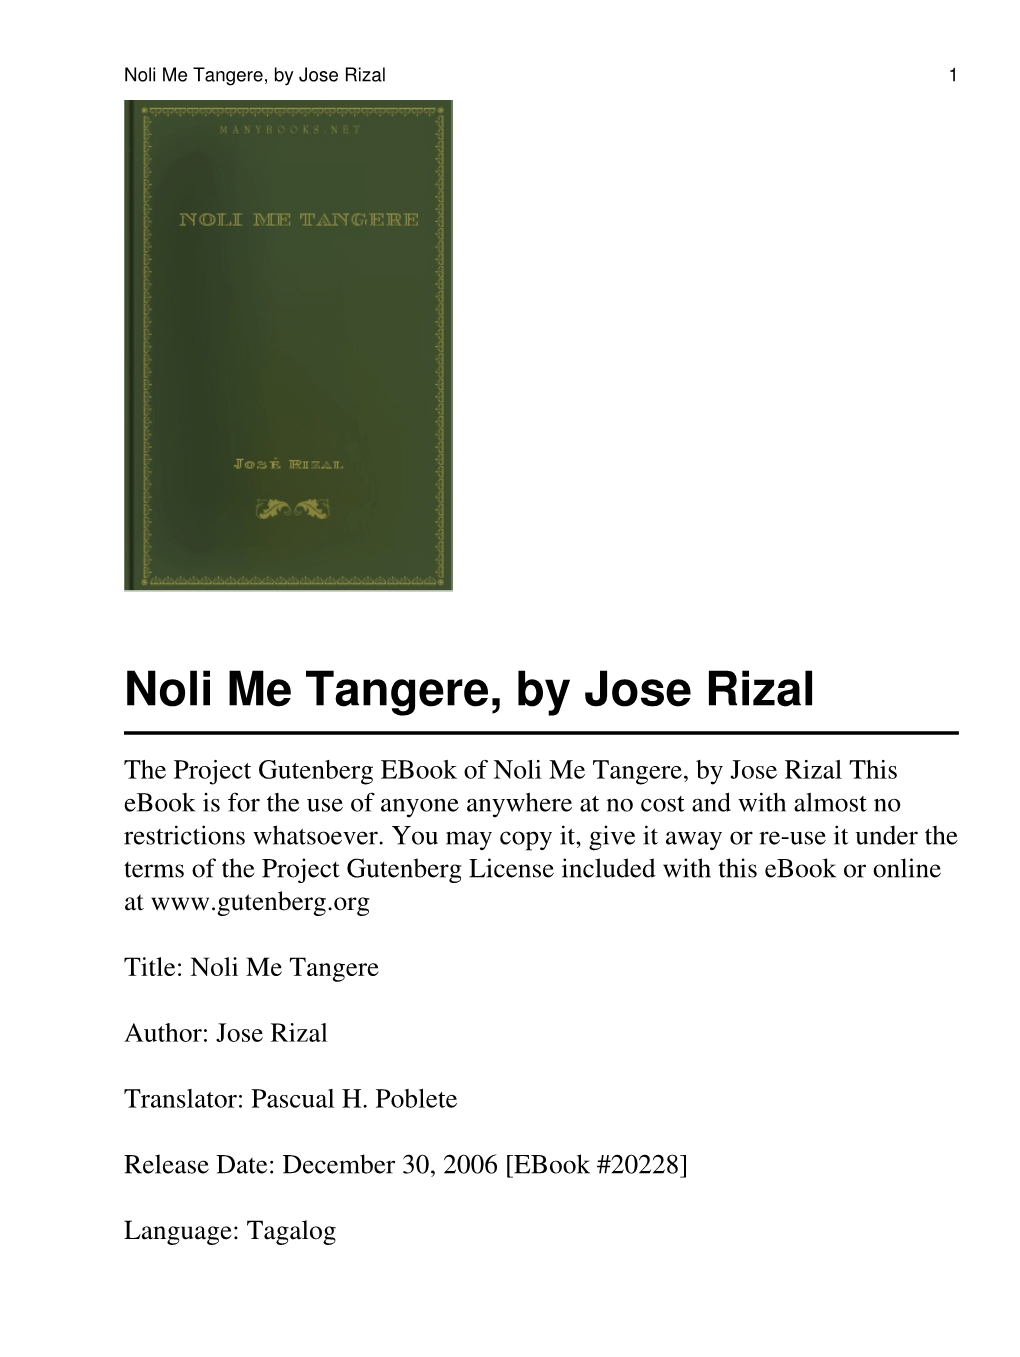 Noli Me Tangere By Jose Rizal Docslib